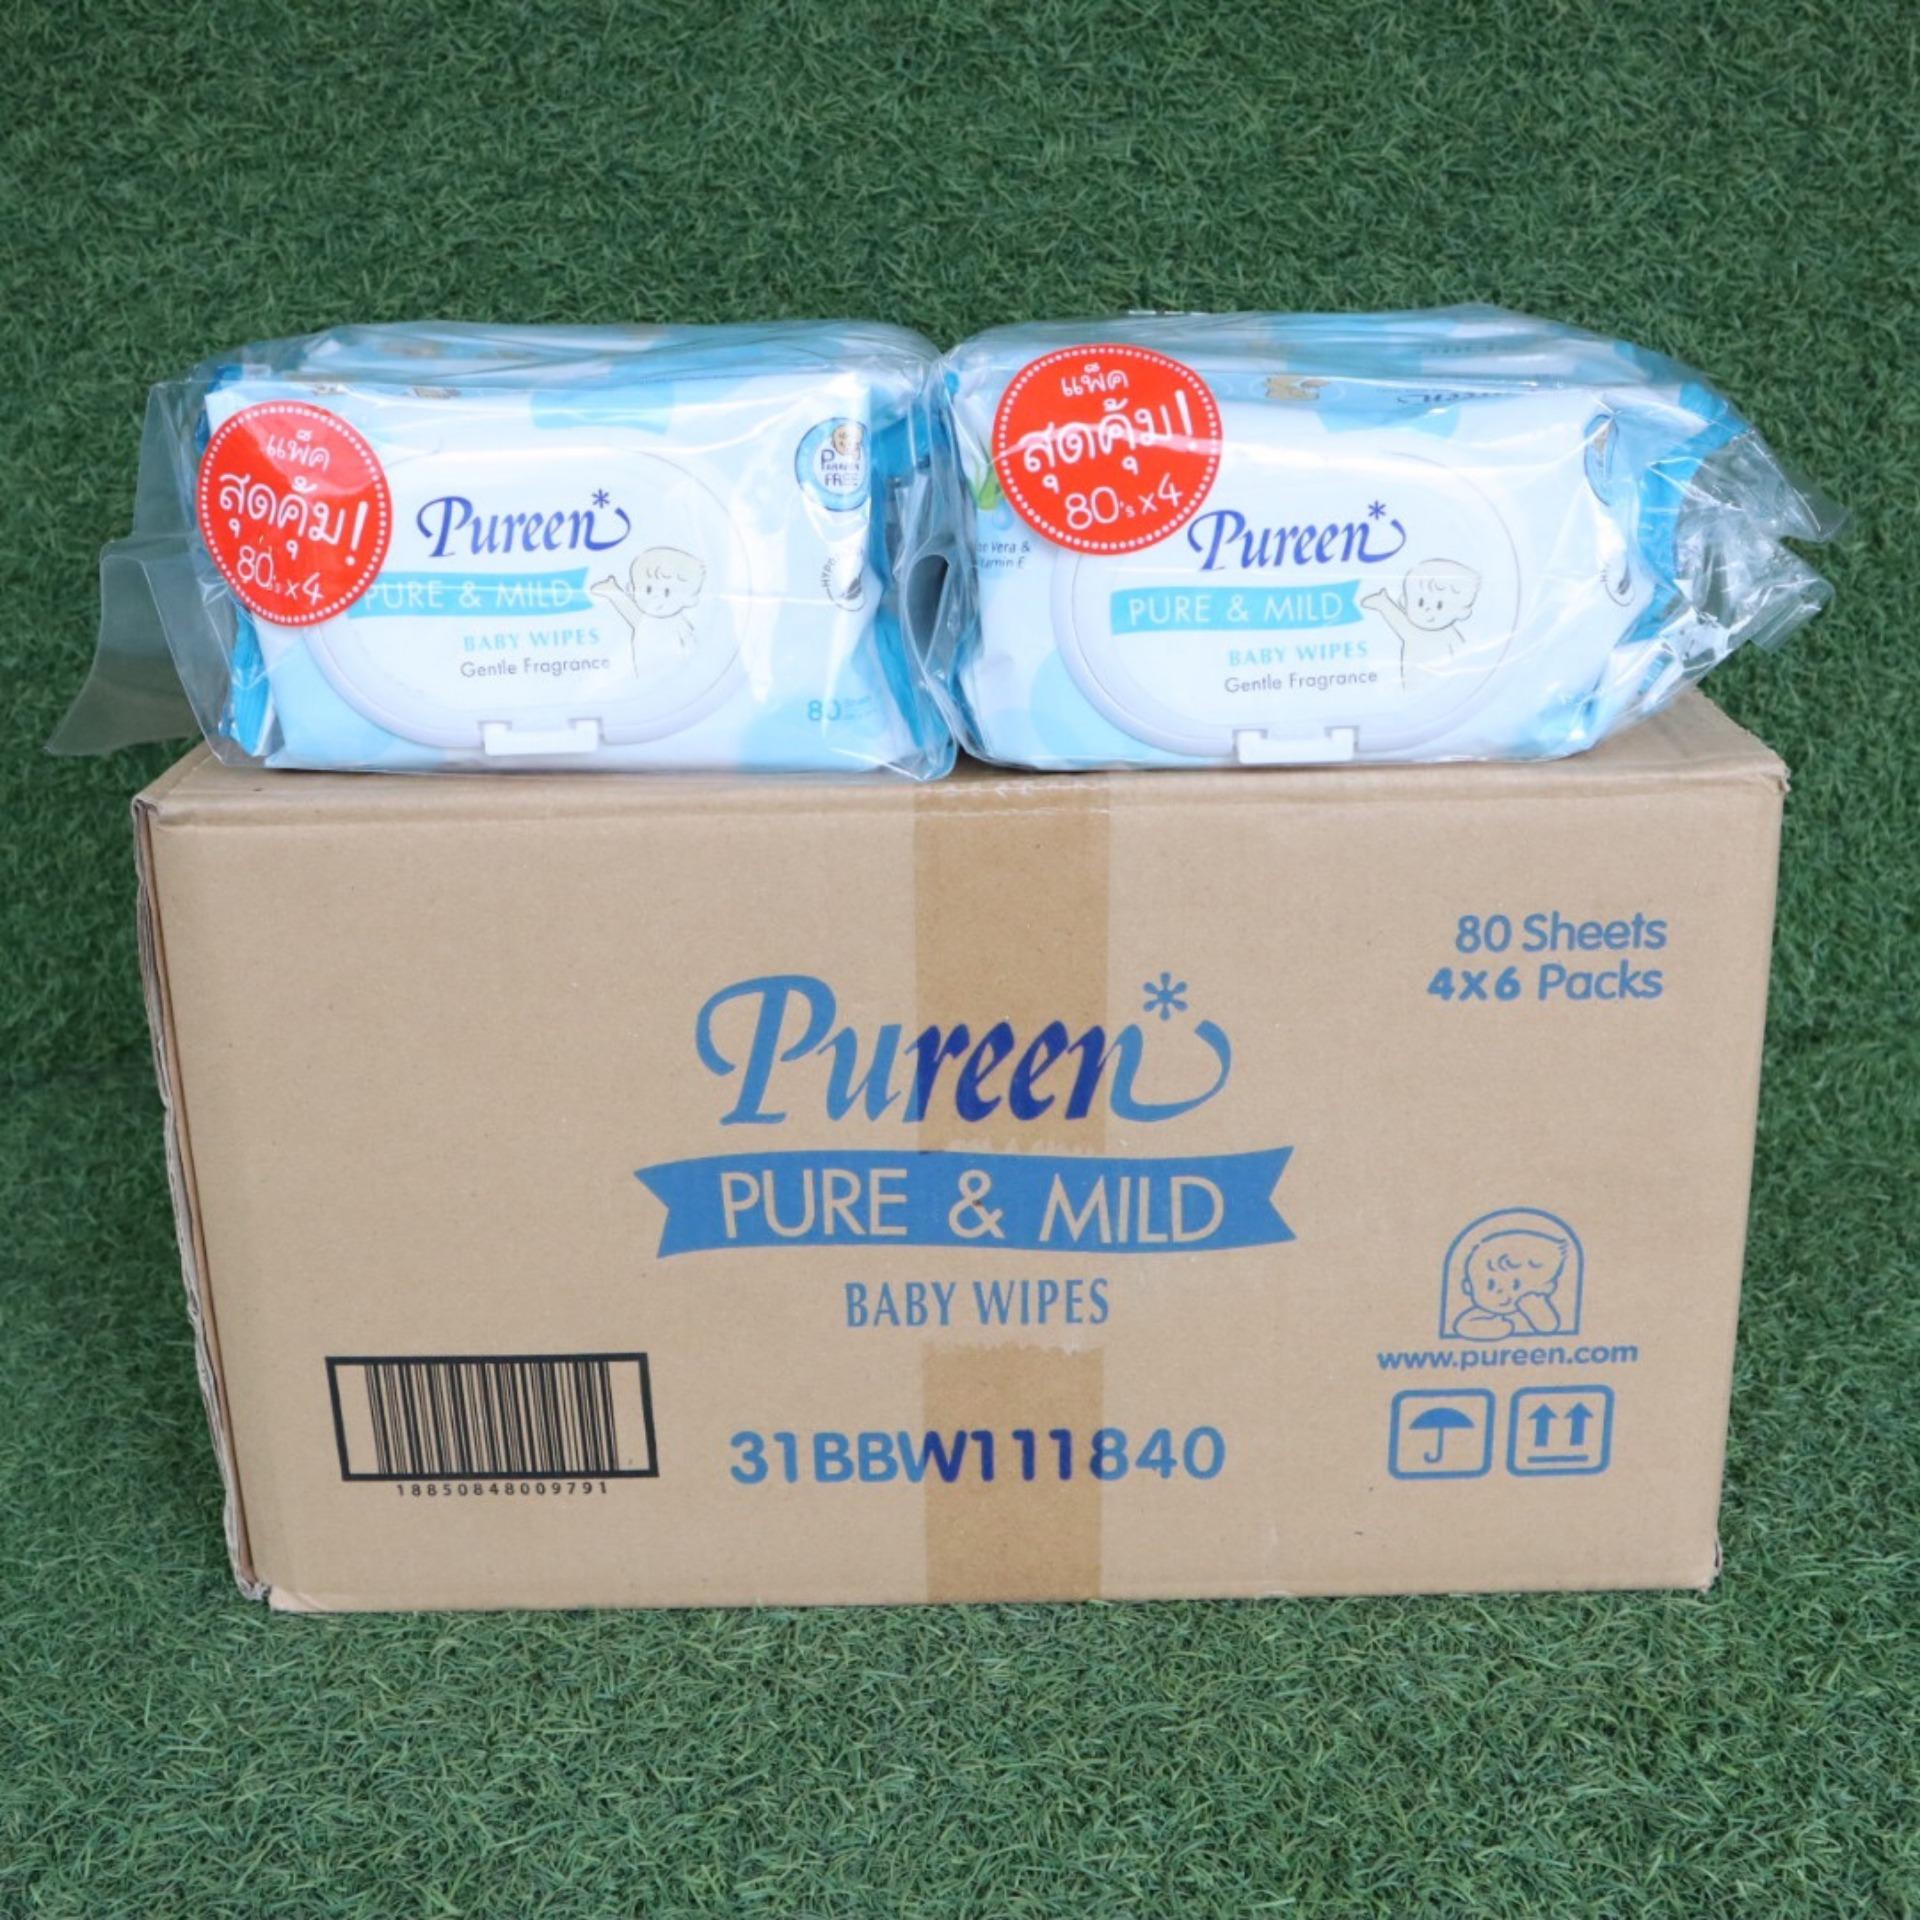 ขายยกลัง Pureen Baby Wipes ผ้าเช็ดทำความสะอาด สูตร Pur & Mild 80 แผ่น ( แพ็ค 4 x 6 ) สีฟ้า